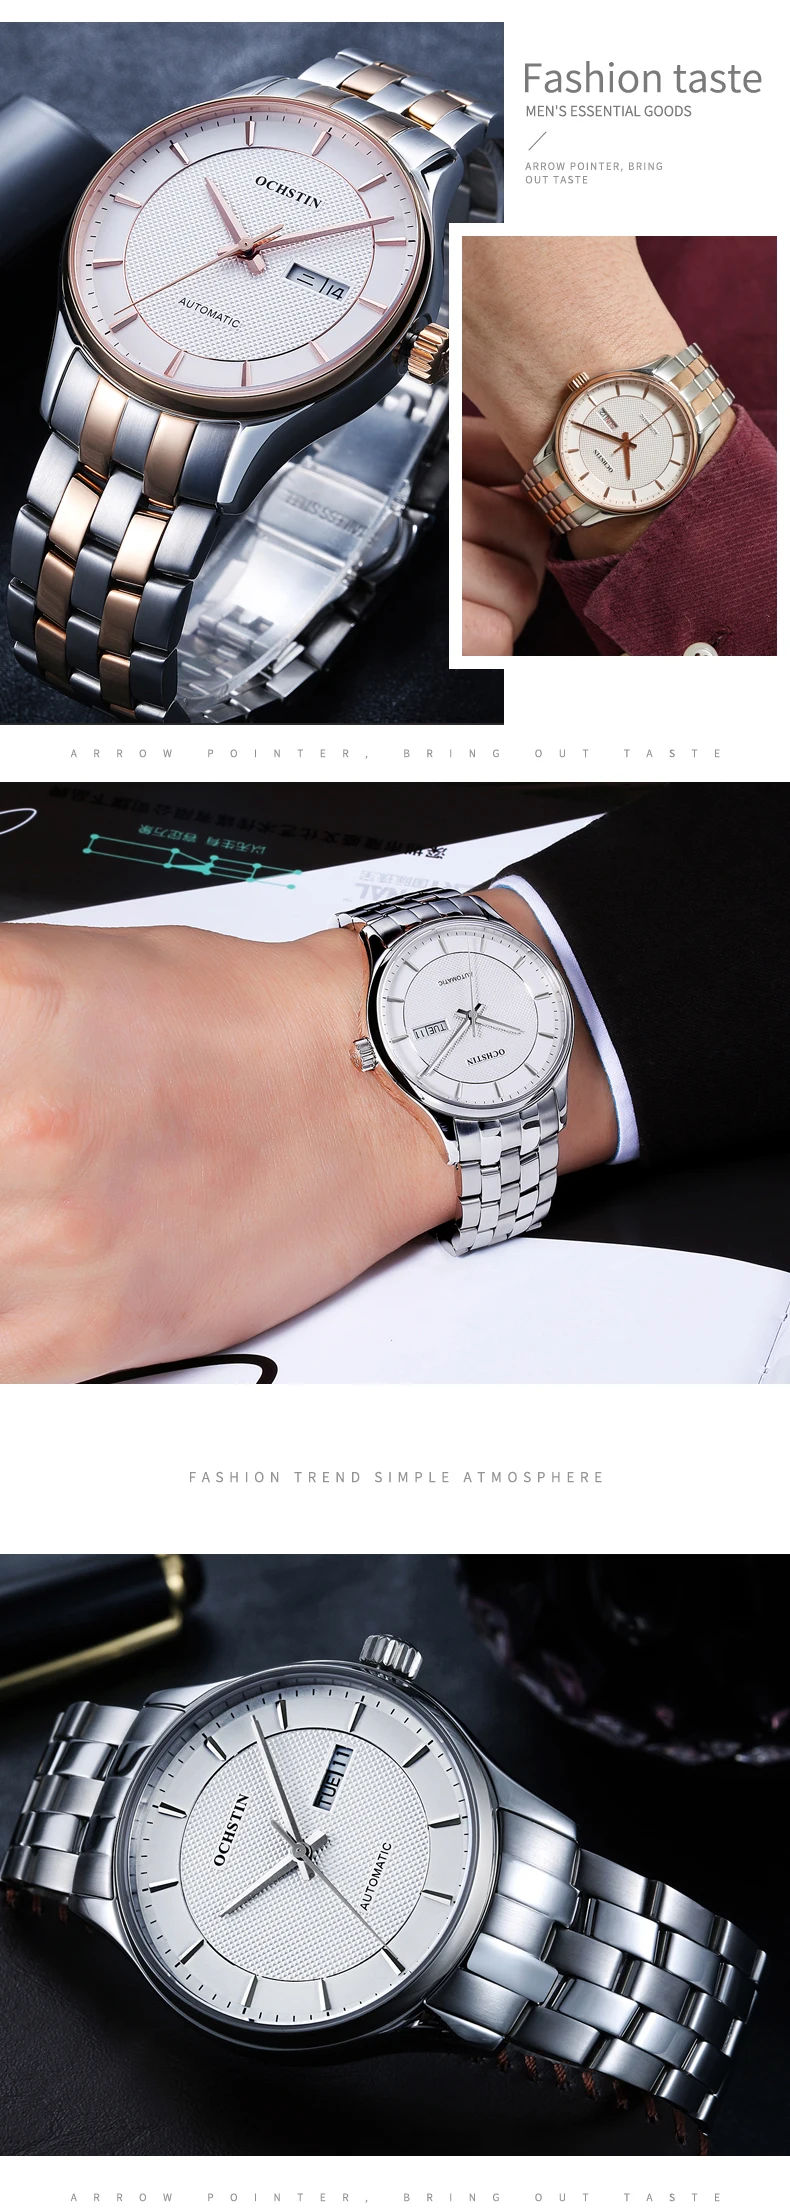 OCHSTIN Топ Luxe бренд 2019 пара влюбленных автоматические механические часы пара тренд мужчины и женщины подарок наручные часы для пар